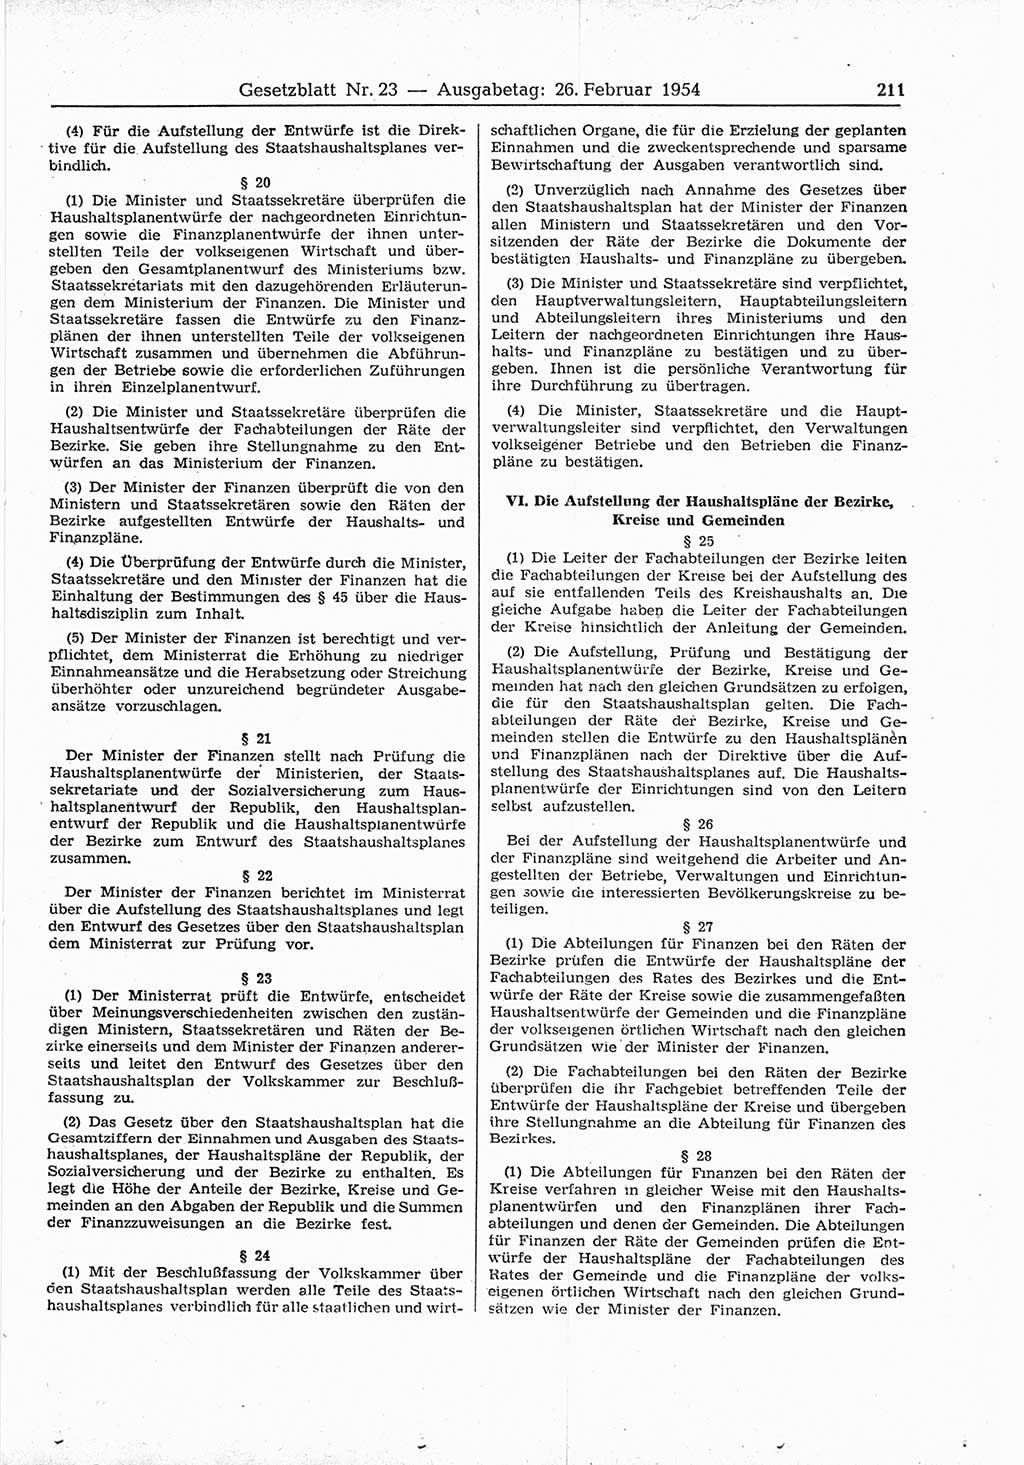 Gesetzblatt (GBl.) der Deutschen Demokratischen Republik (DDR) 1954, Seite 211 (GBl. DDR 1954, S. 211)